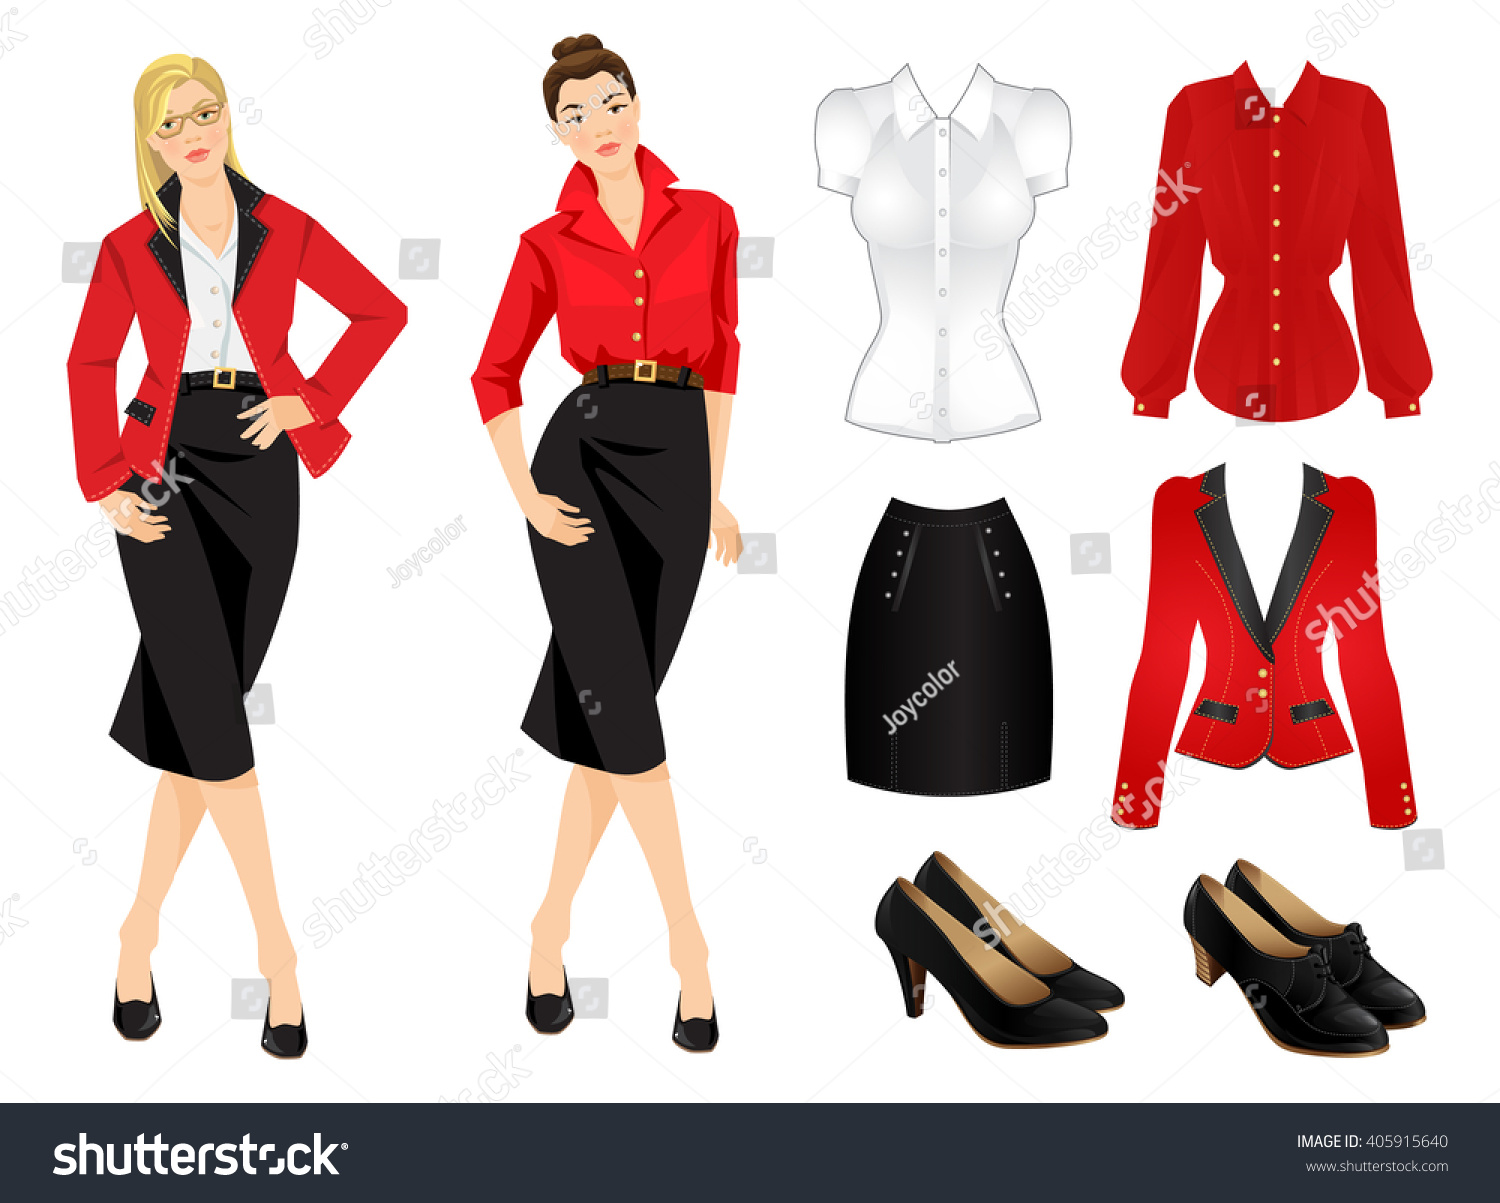 red formal jacket ladies